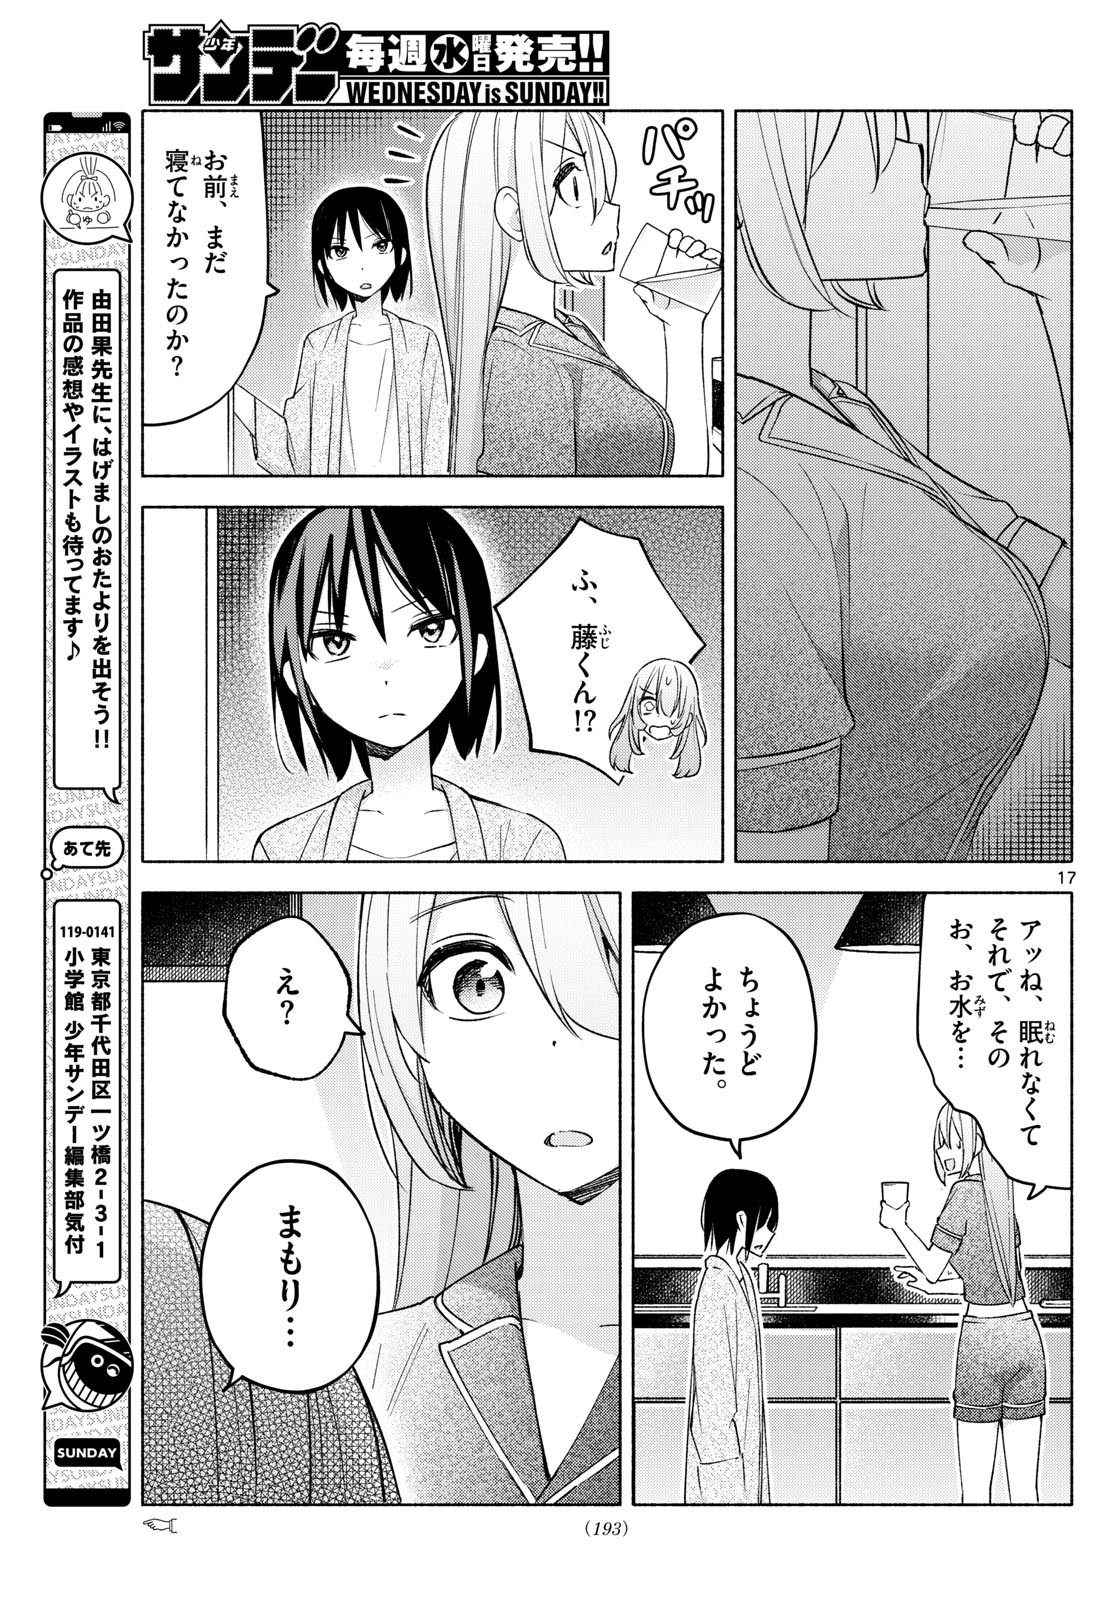 Kimi to Warui Koto ga Shitai - Chapter 032 - Page 17